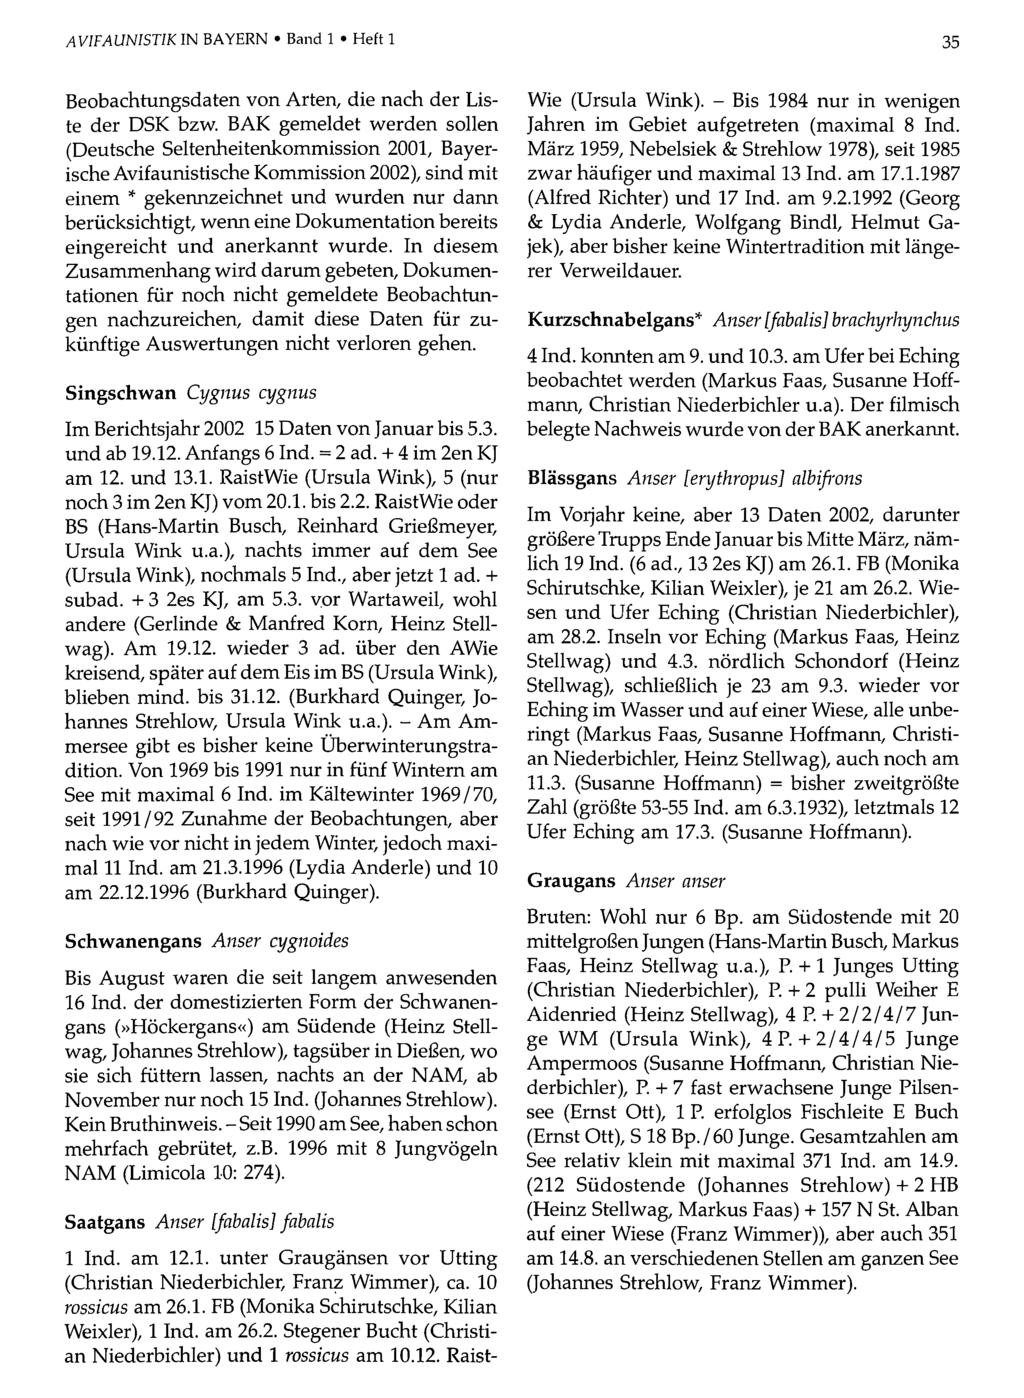 AVIFAUNISTIK IN BAYERN Band Ornithologische 1 Heft 1Gesellschaft Bayern, download unter www.biologiezentrum.at 35 Beobachtungsdaten von Arten, die nach der Liste der DSK bzw.